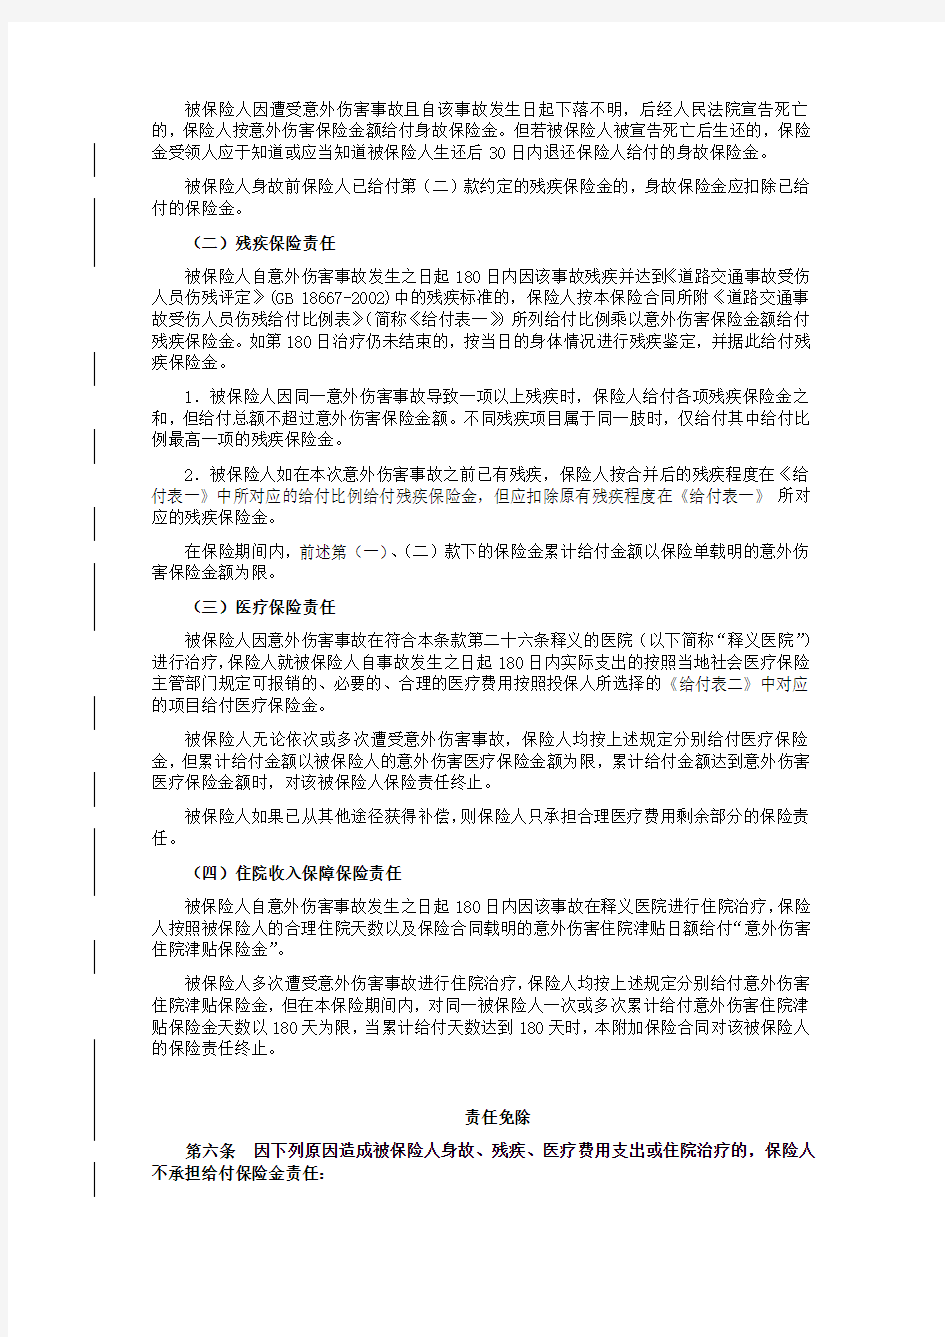 中国平安财产保险股份有限公司平安培训驾驶学员意外伤害保险条款